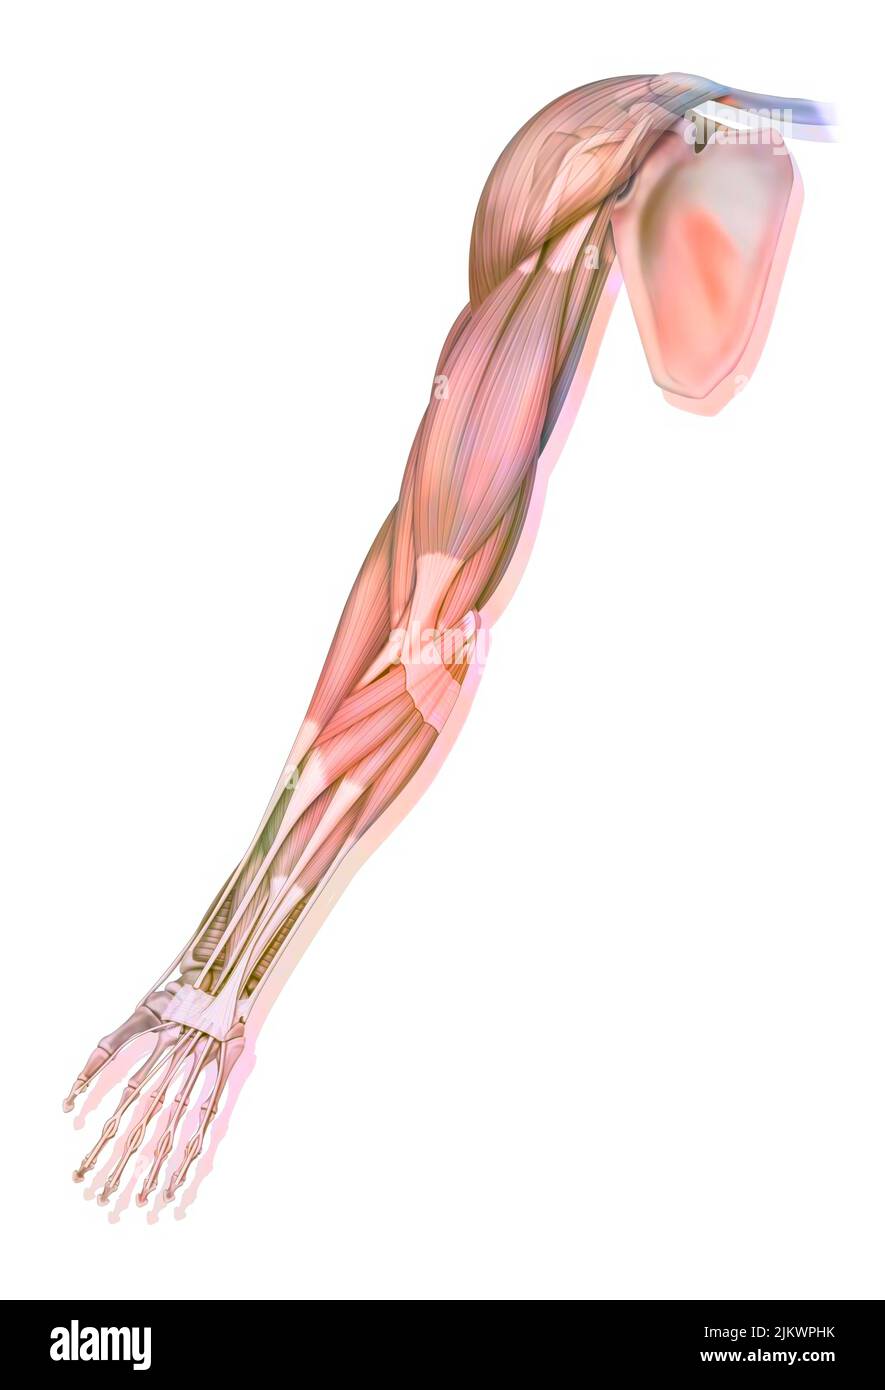 Los músculos de la extremidad superior derecha en vista anterior. Foto de stock